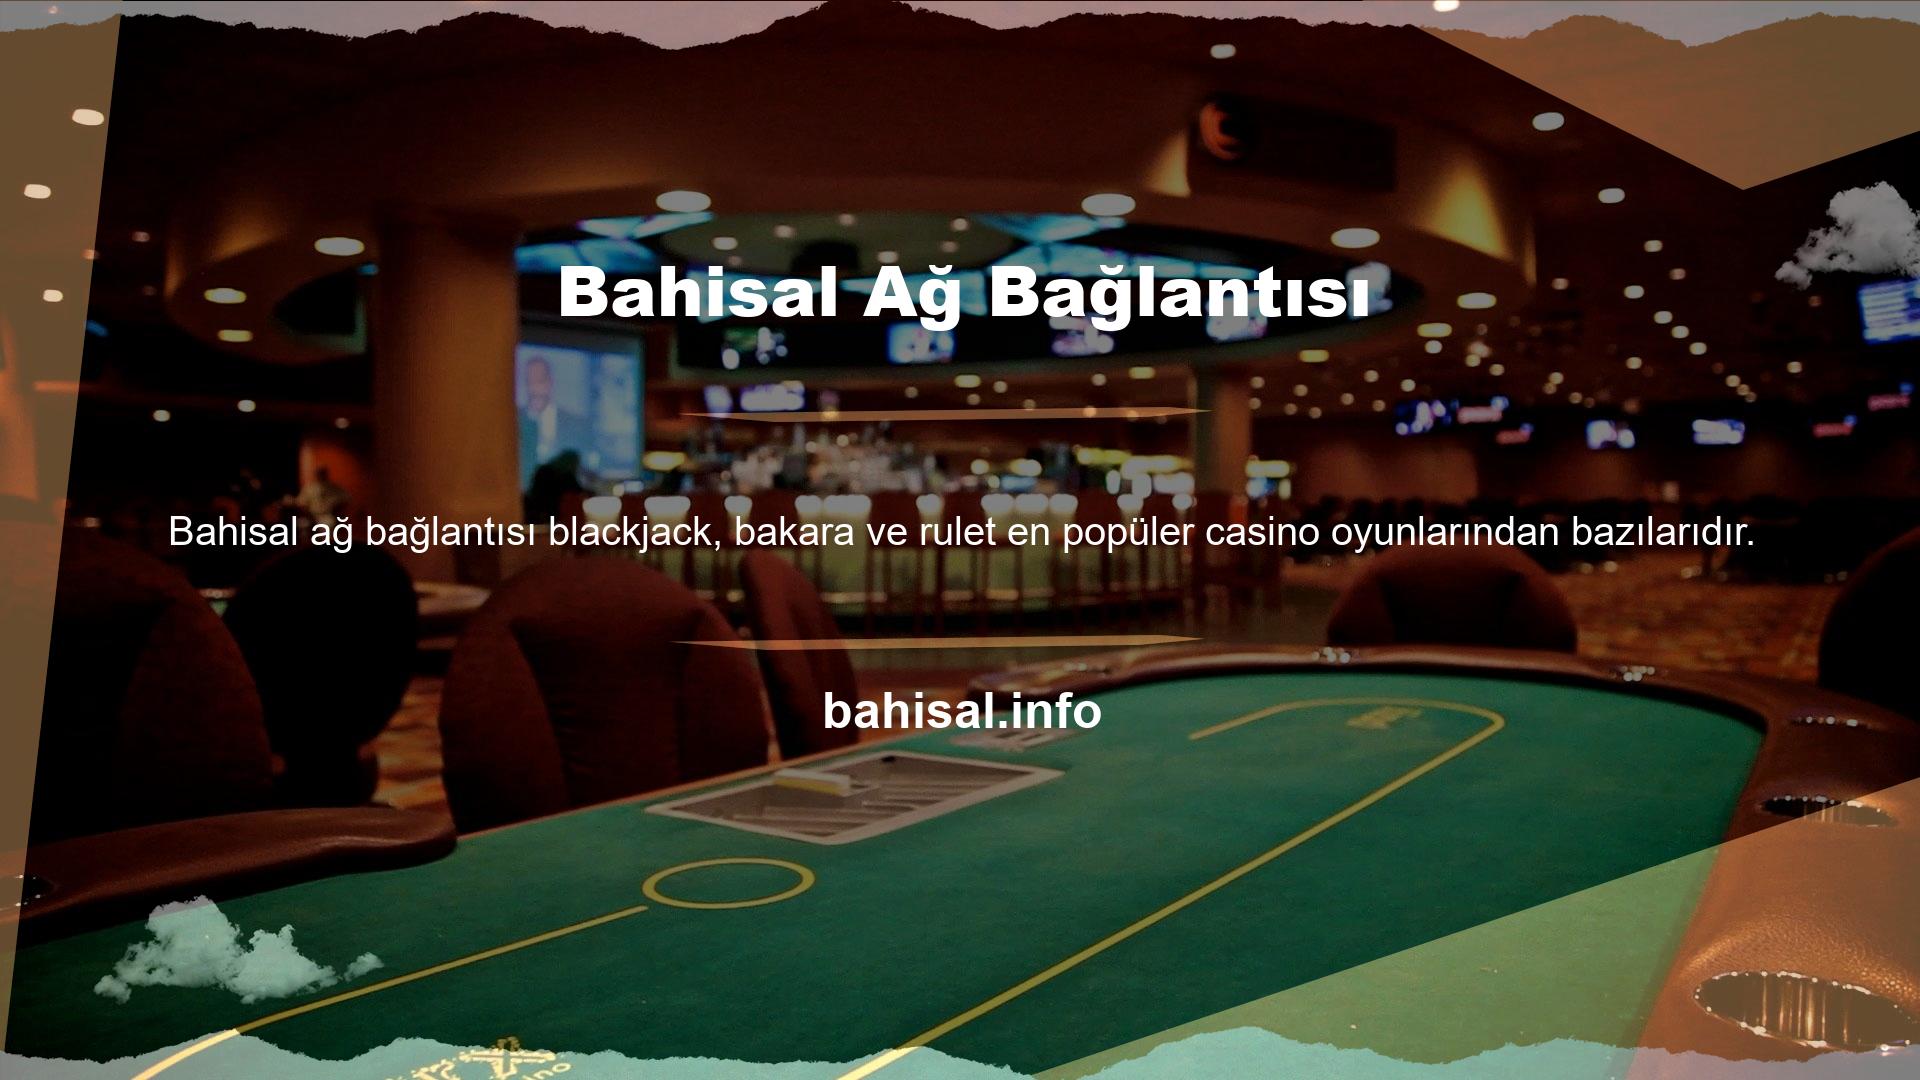 Casino, oyunda kazanılan hesap kazançlarının tanımını değiştirmeye çalışmaz